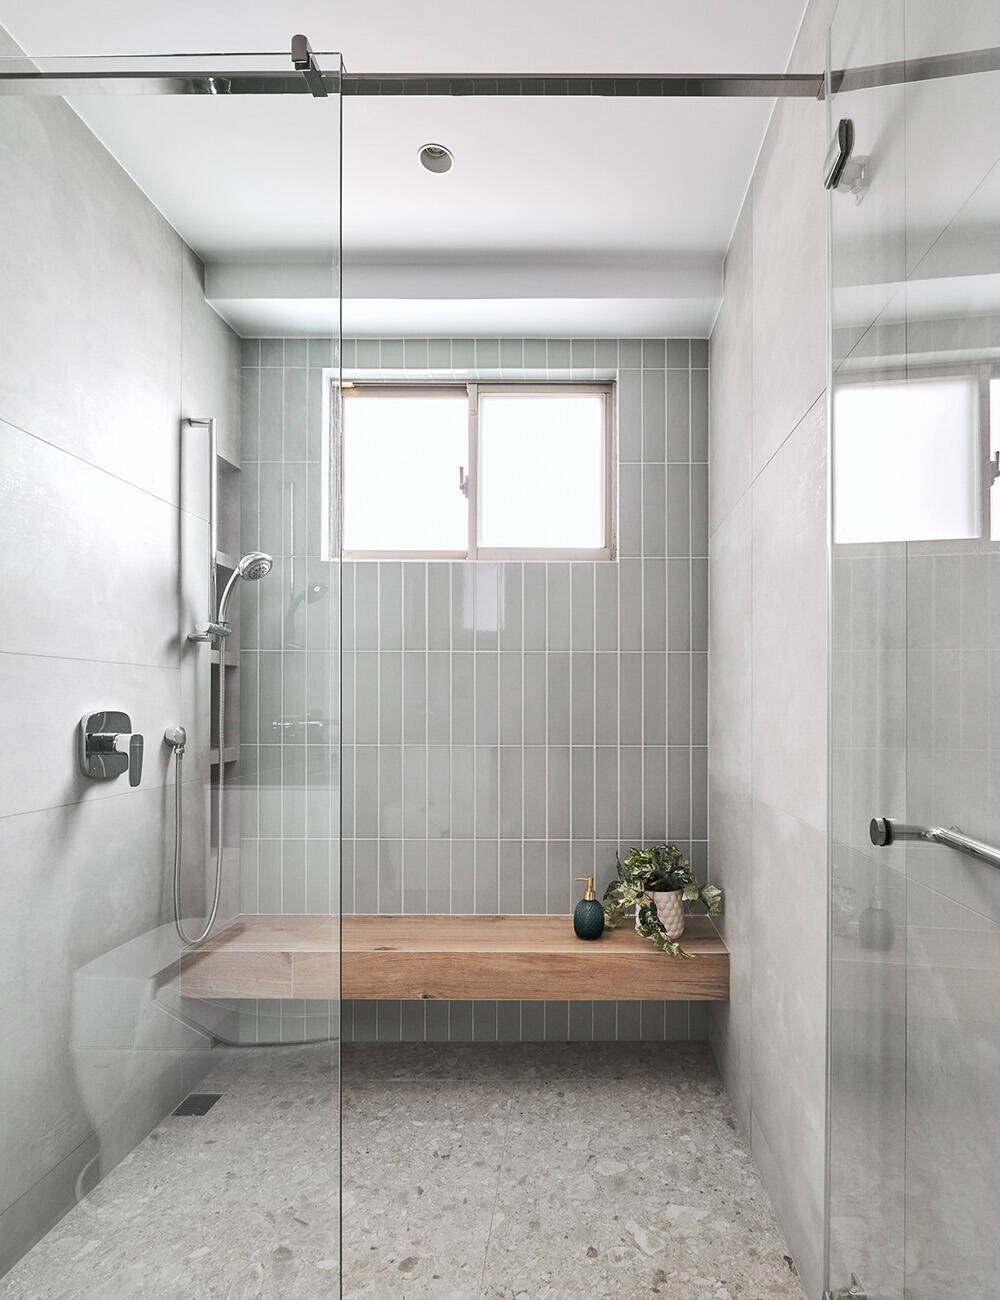 
Phòng tắm được thiết kế đơn giản ngăn cách giữa phần khô và ướt giúp không gian vệ sinh luôn sạch sẽ
